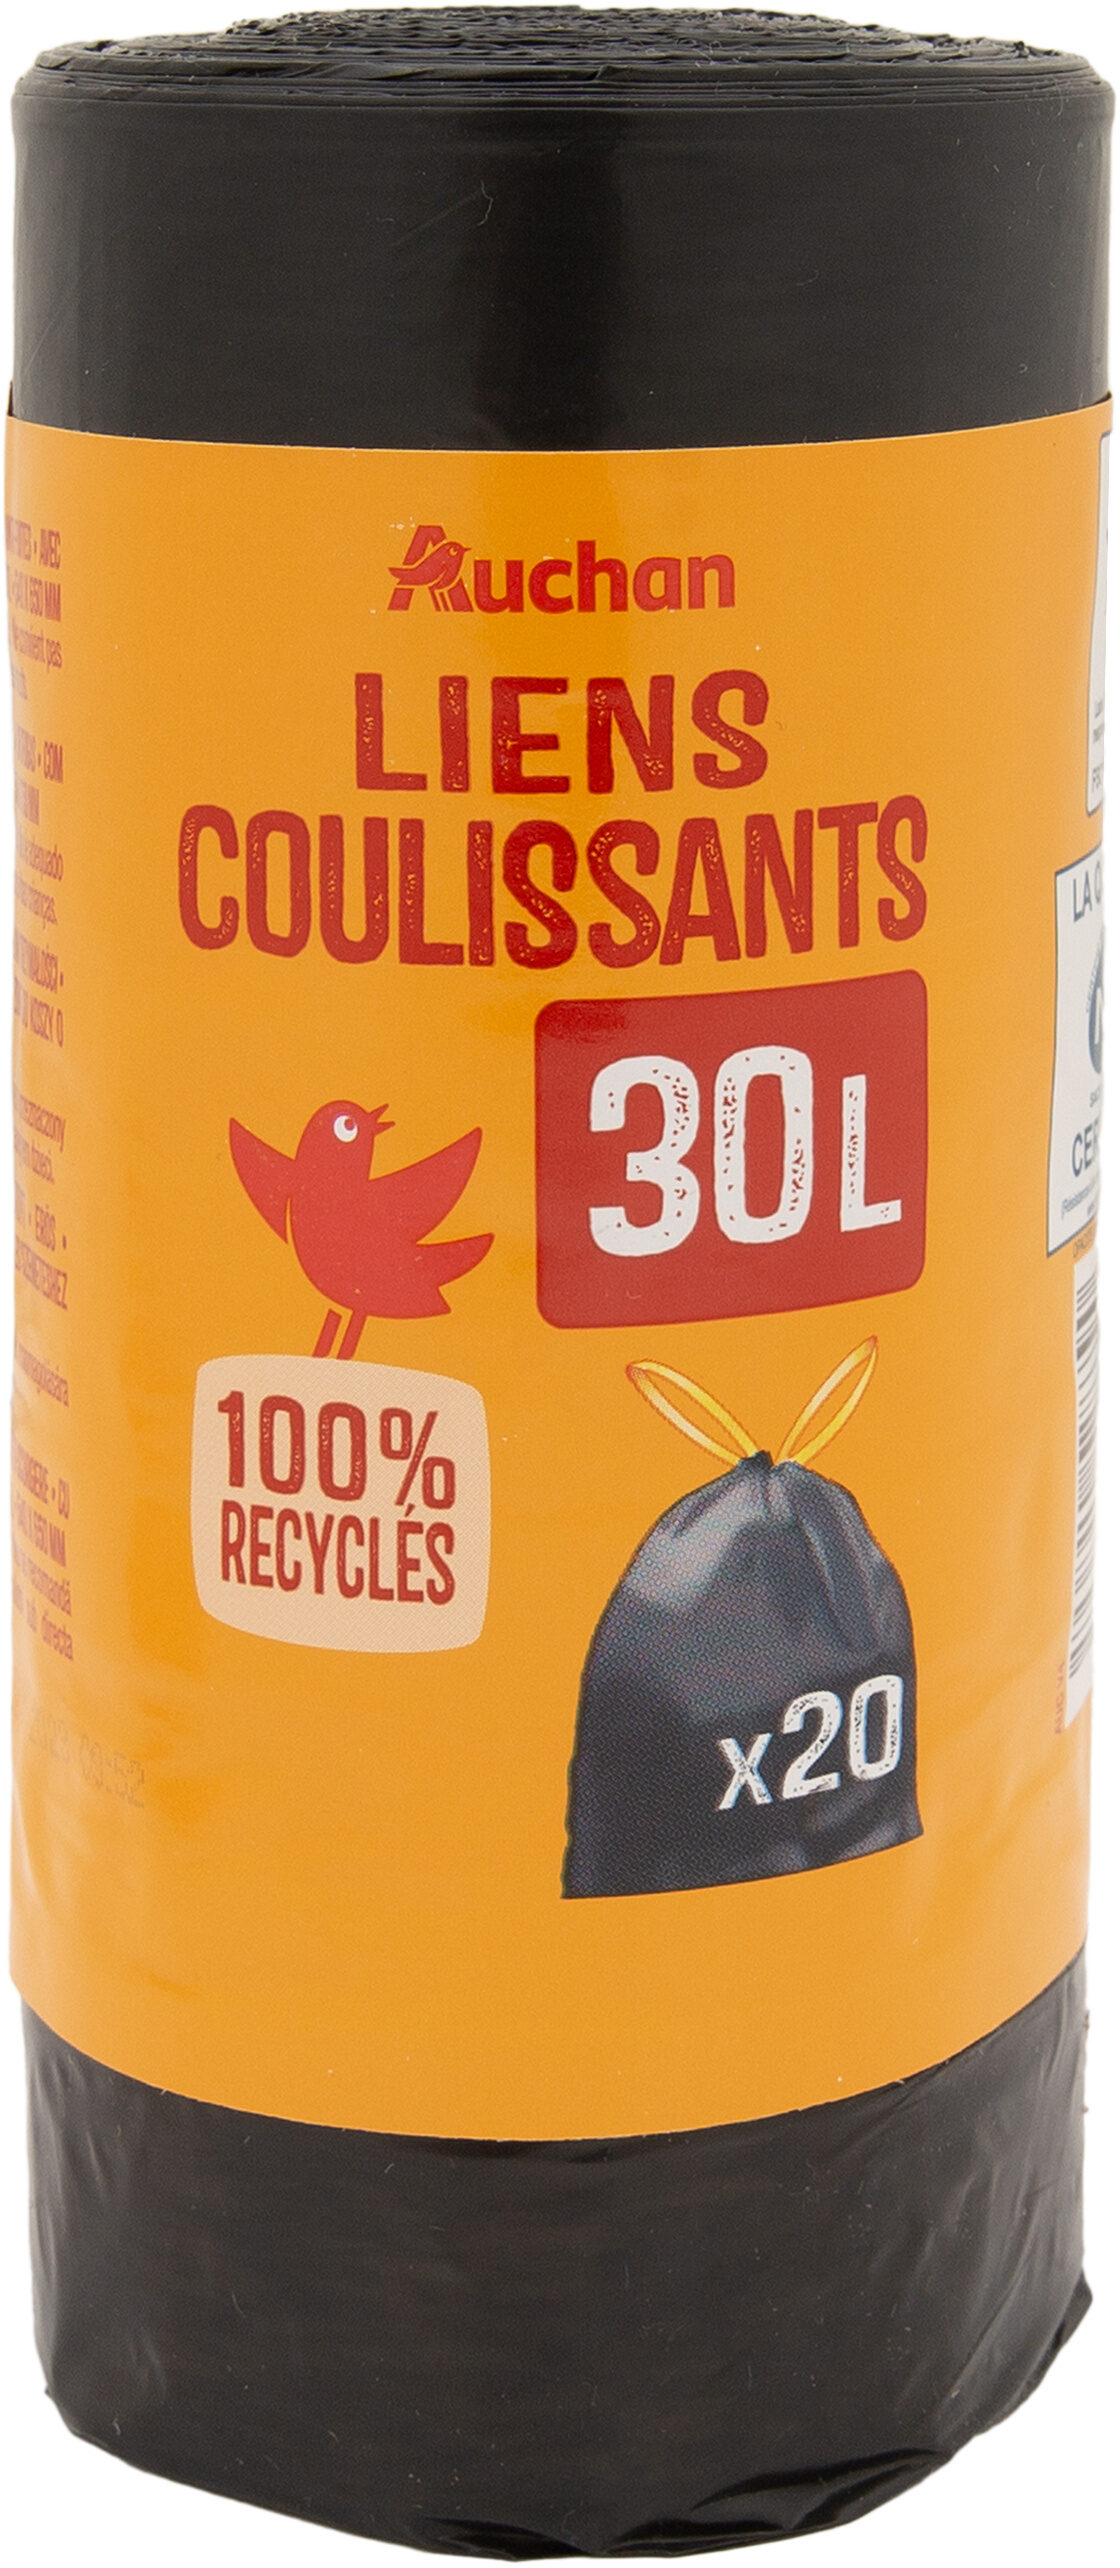 Auchan sacs poubelles avec cordon 30l 20pcs - Product - fr